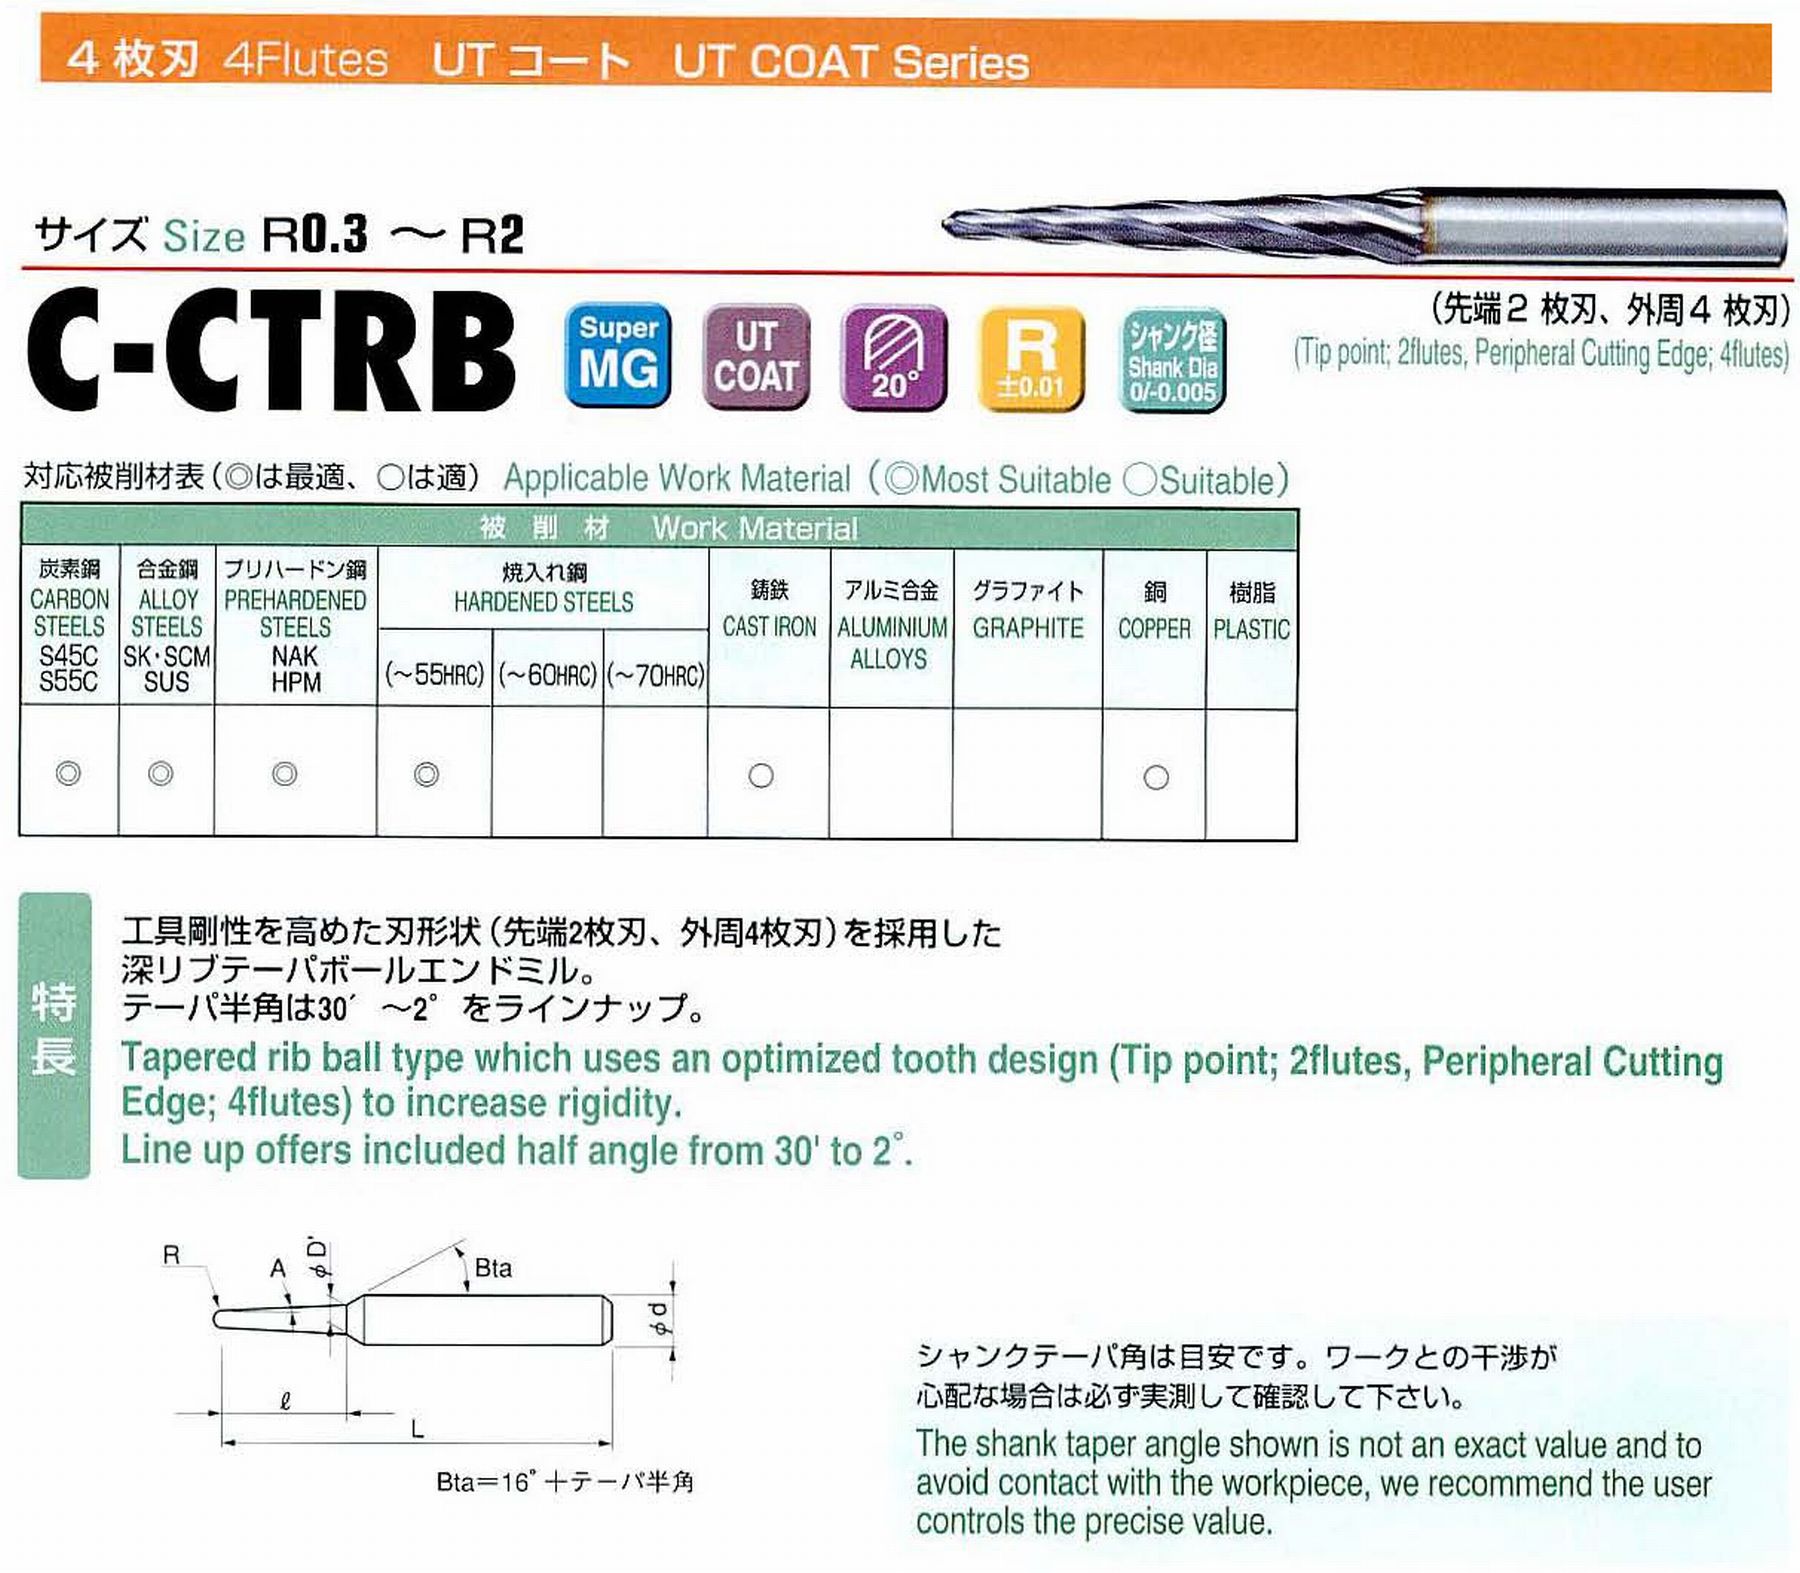 ユニオンツール 4枚刃 C-CTRB4012-8-1 ボール半径R0.6 テーパ半角30′ 刃長8 大端径1.33 全長45 シャンク径4